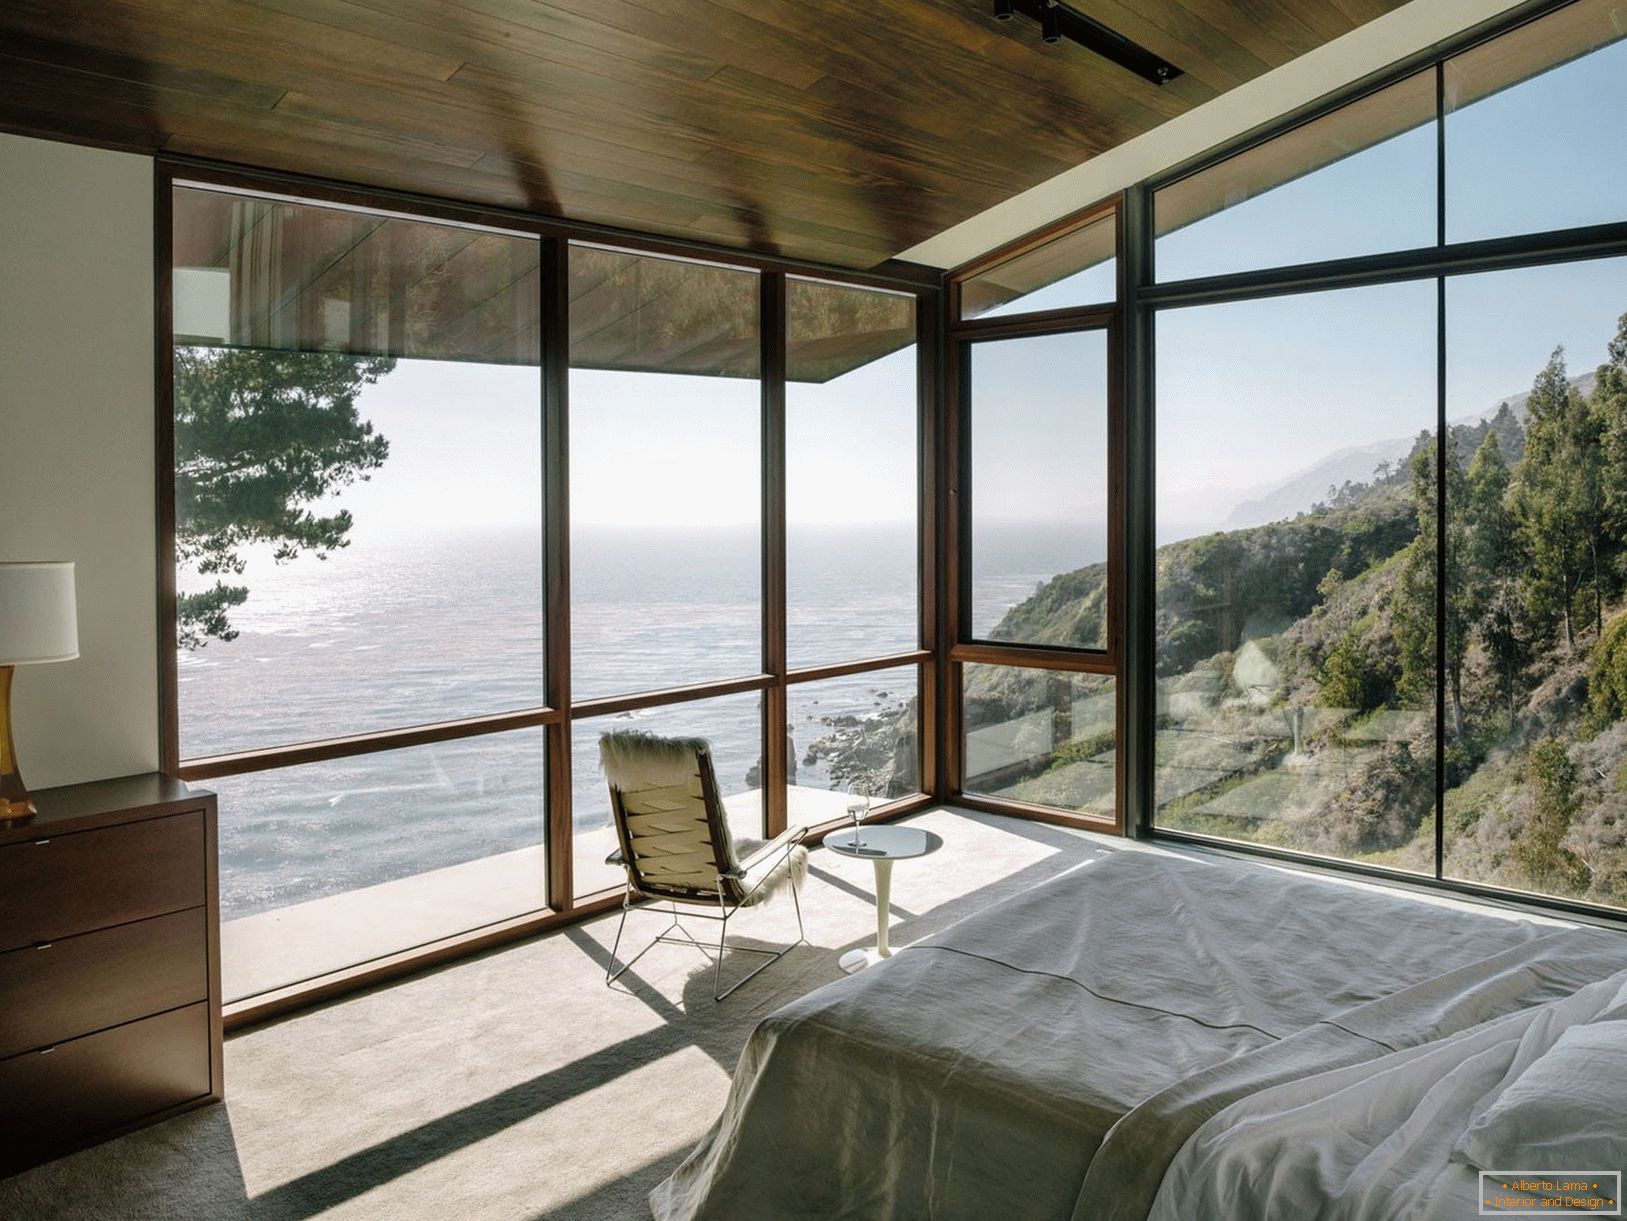 Panoramiczne okna z widokiem na morze